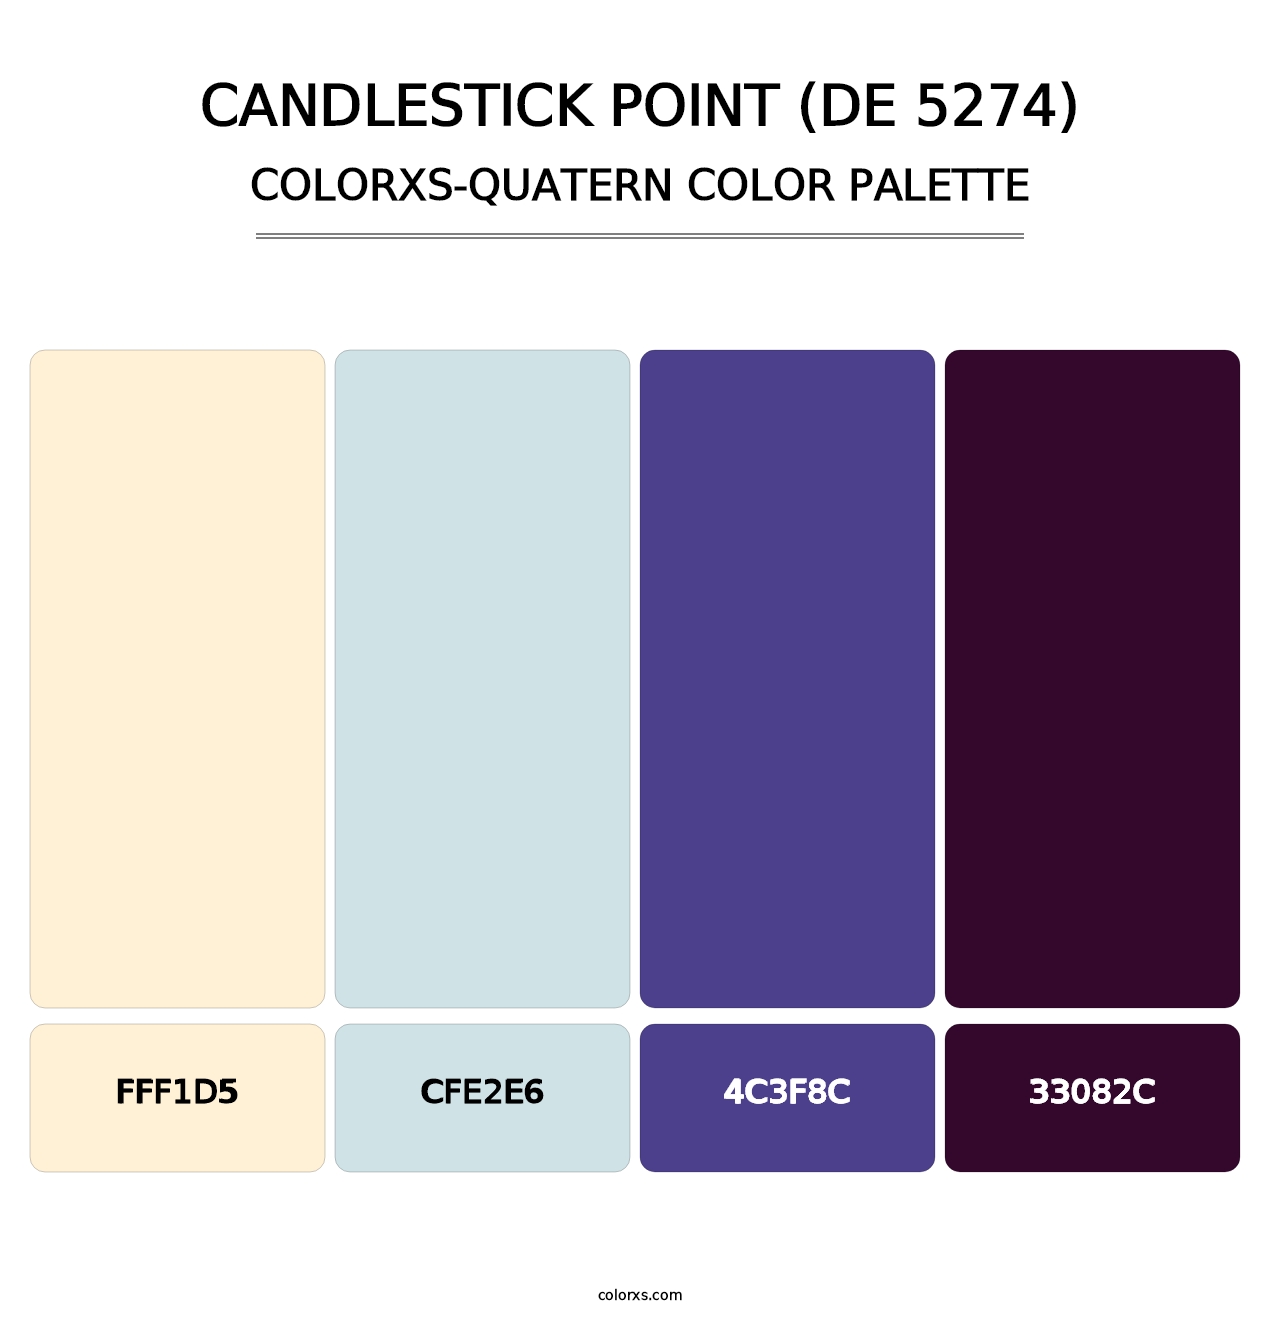 Candlestick Point (DE 5274) - Colorxs Quatern Palette